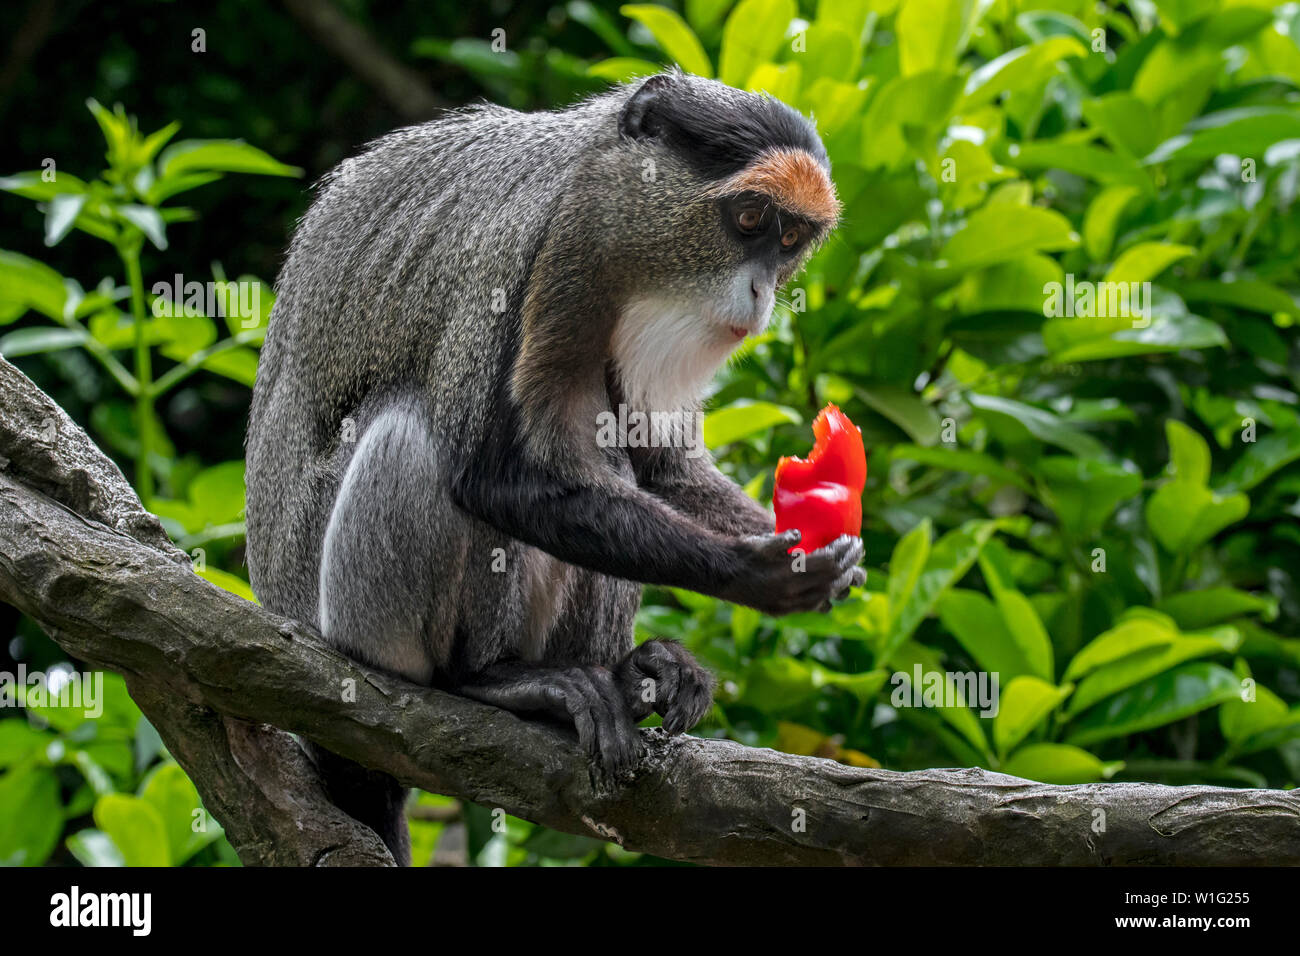 De Brazza's monkey (Cercopithecus neglectus) nativas de África Central, comer fruta en el árbol Foto de stock